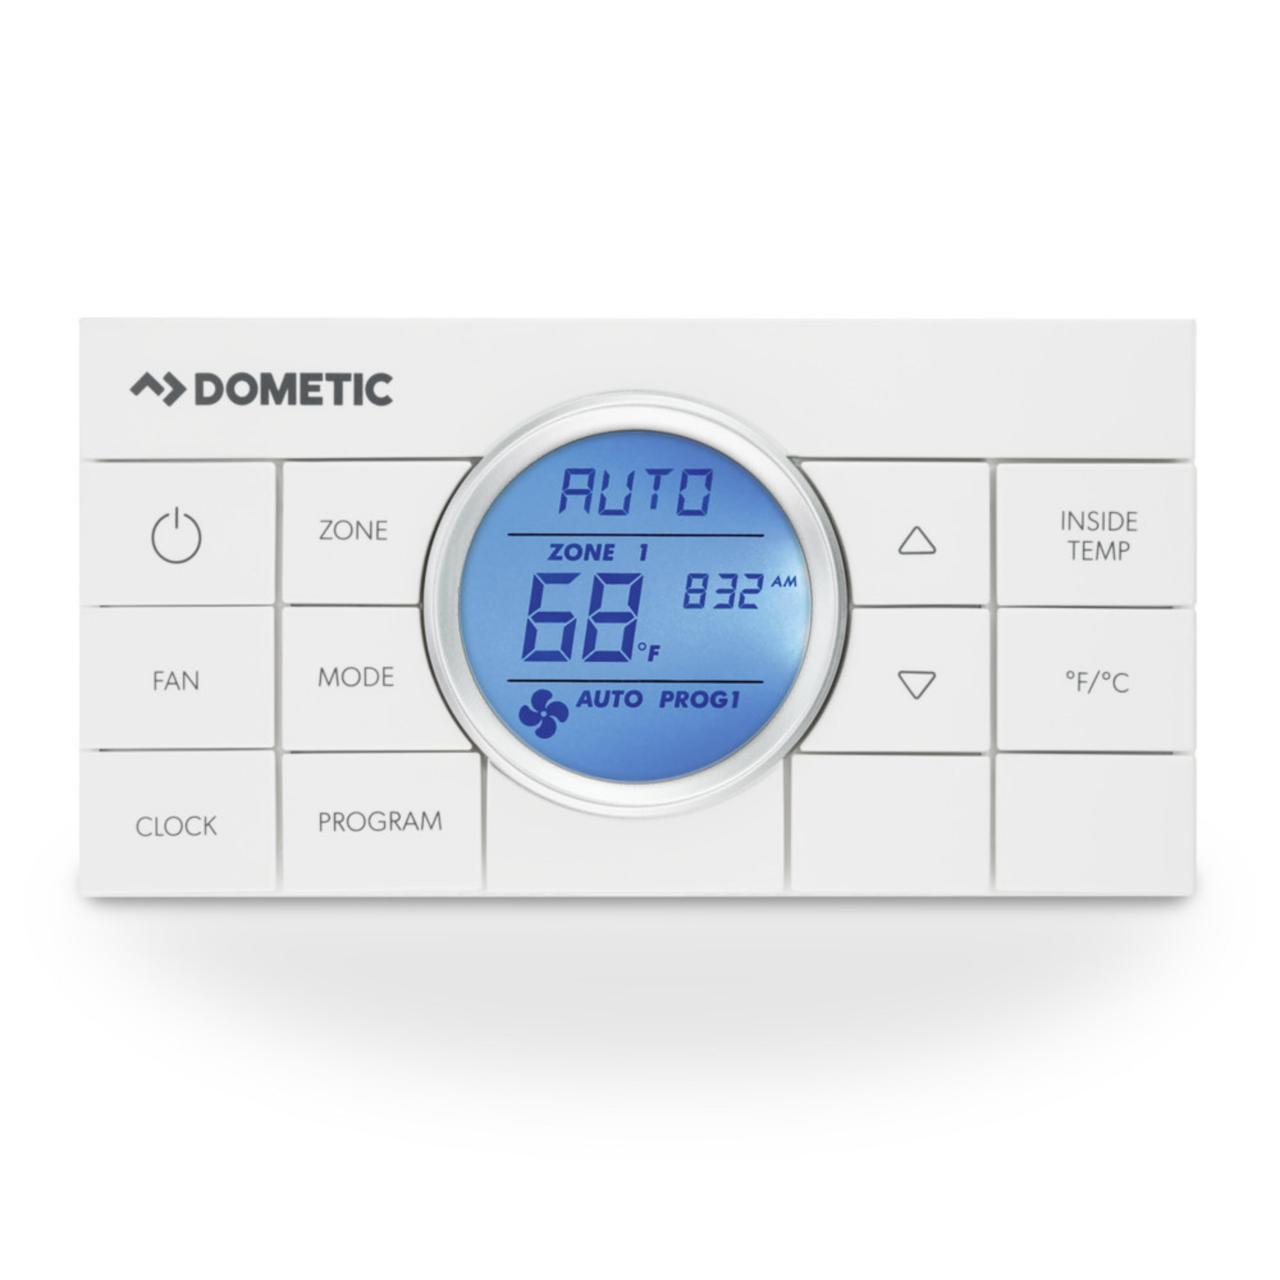 Dometic Comfort Control Center - Multi-Zone CCC Thermostat in White